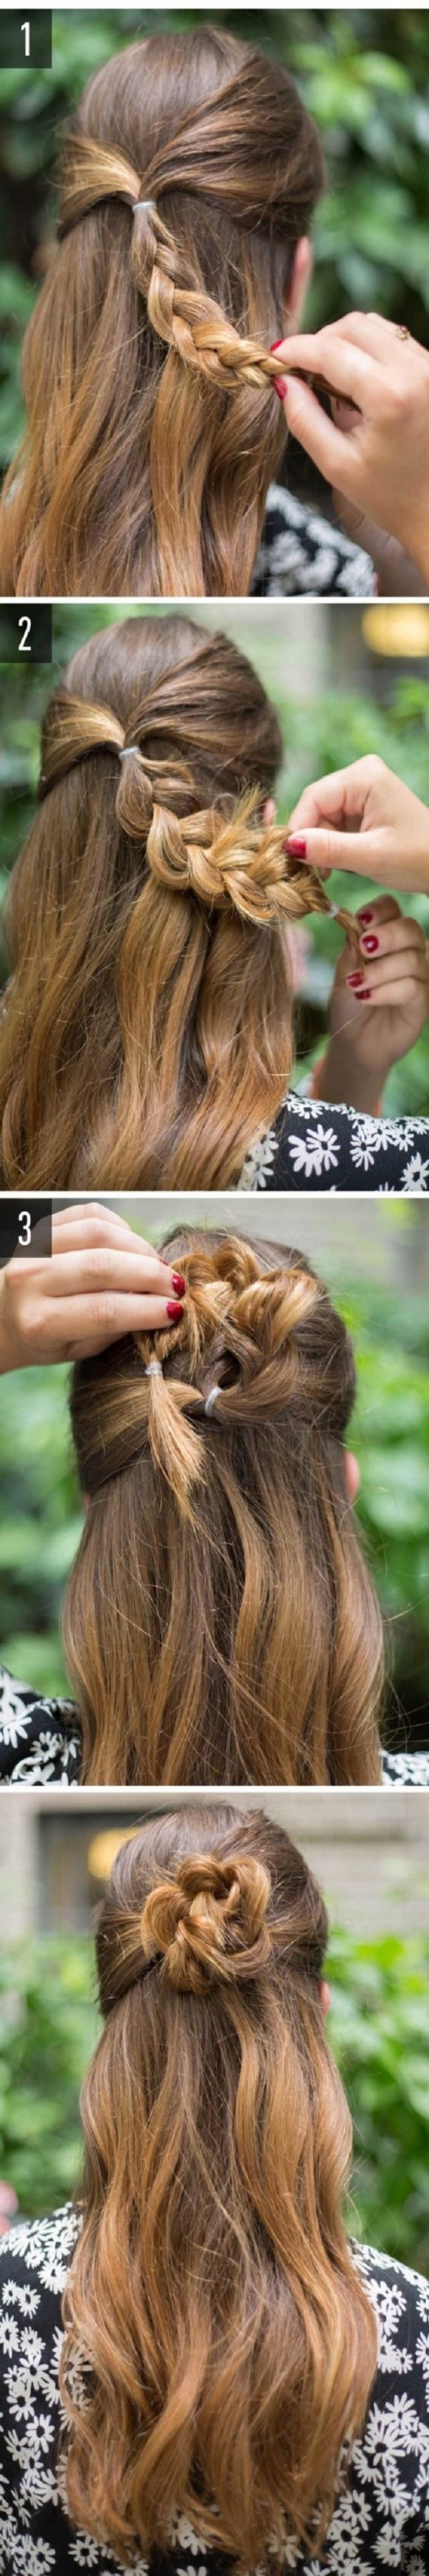 Cách làm những kiểu tóc đẹp, sang trọng nhanh nhất cho các nàng xuống phố (2)